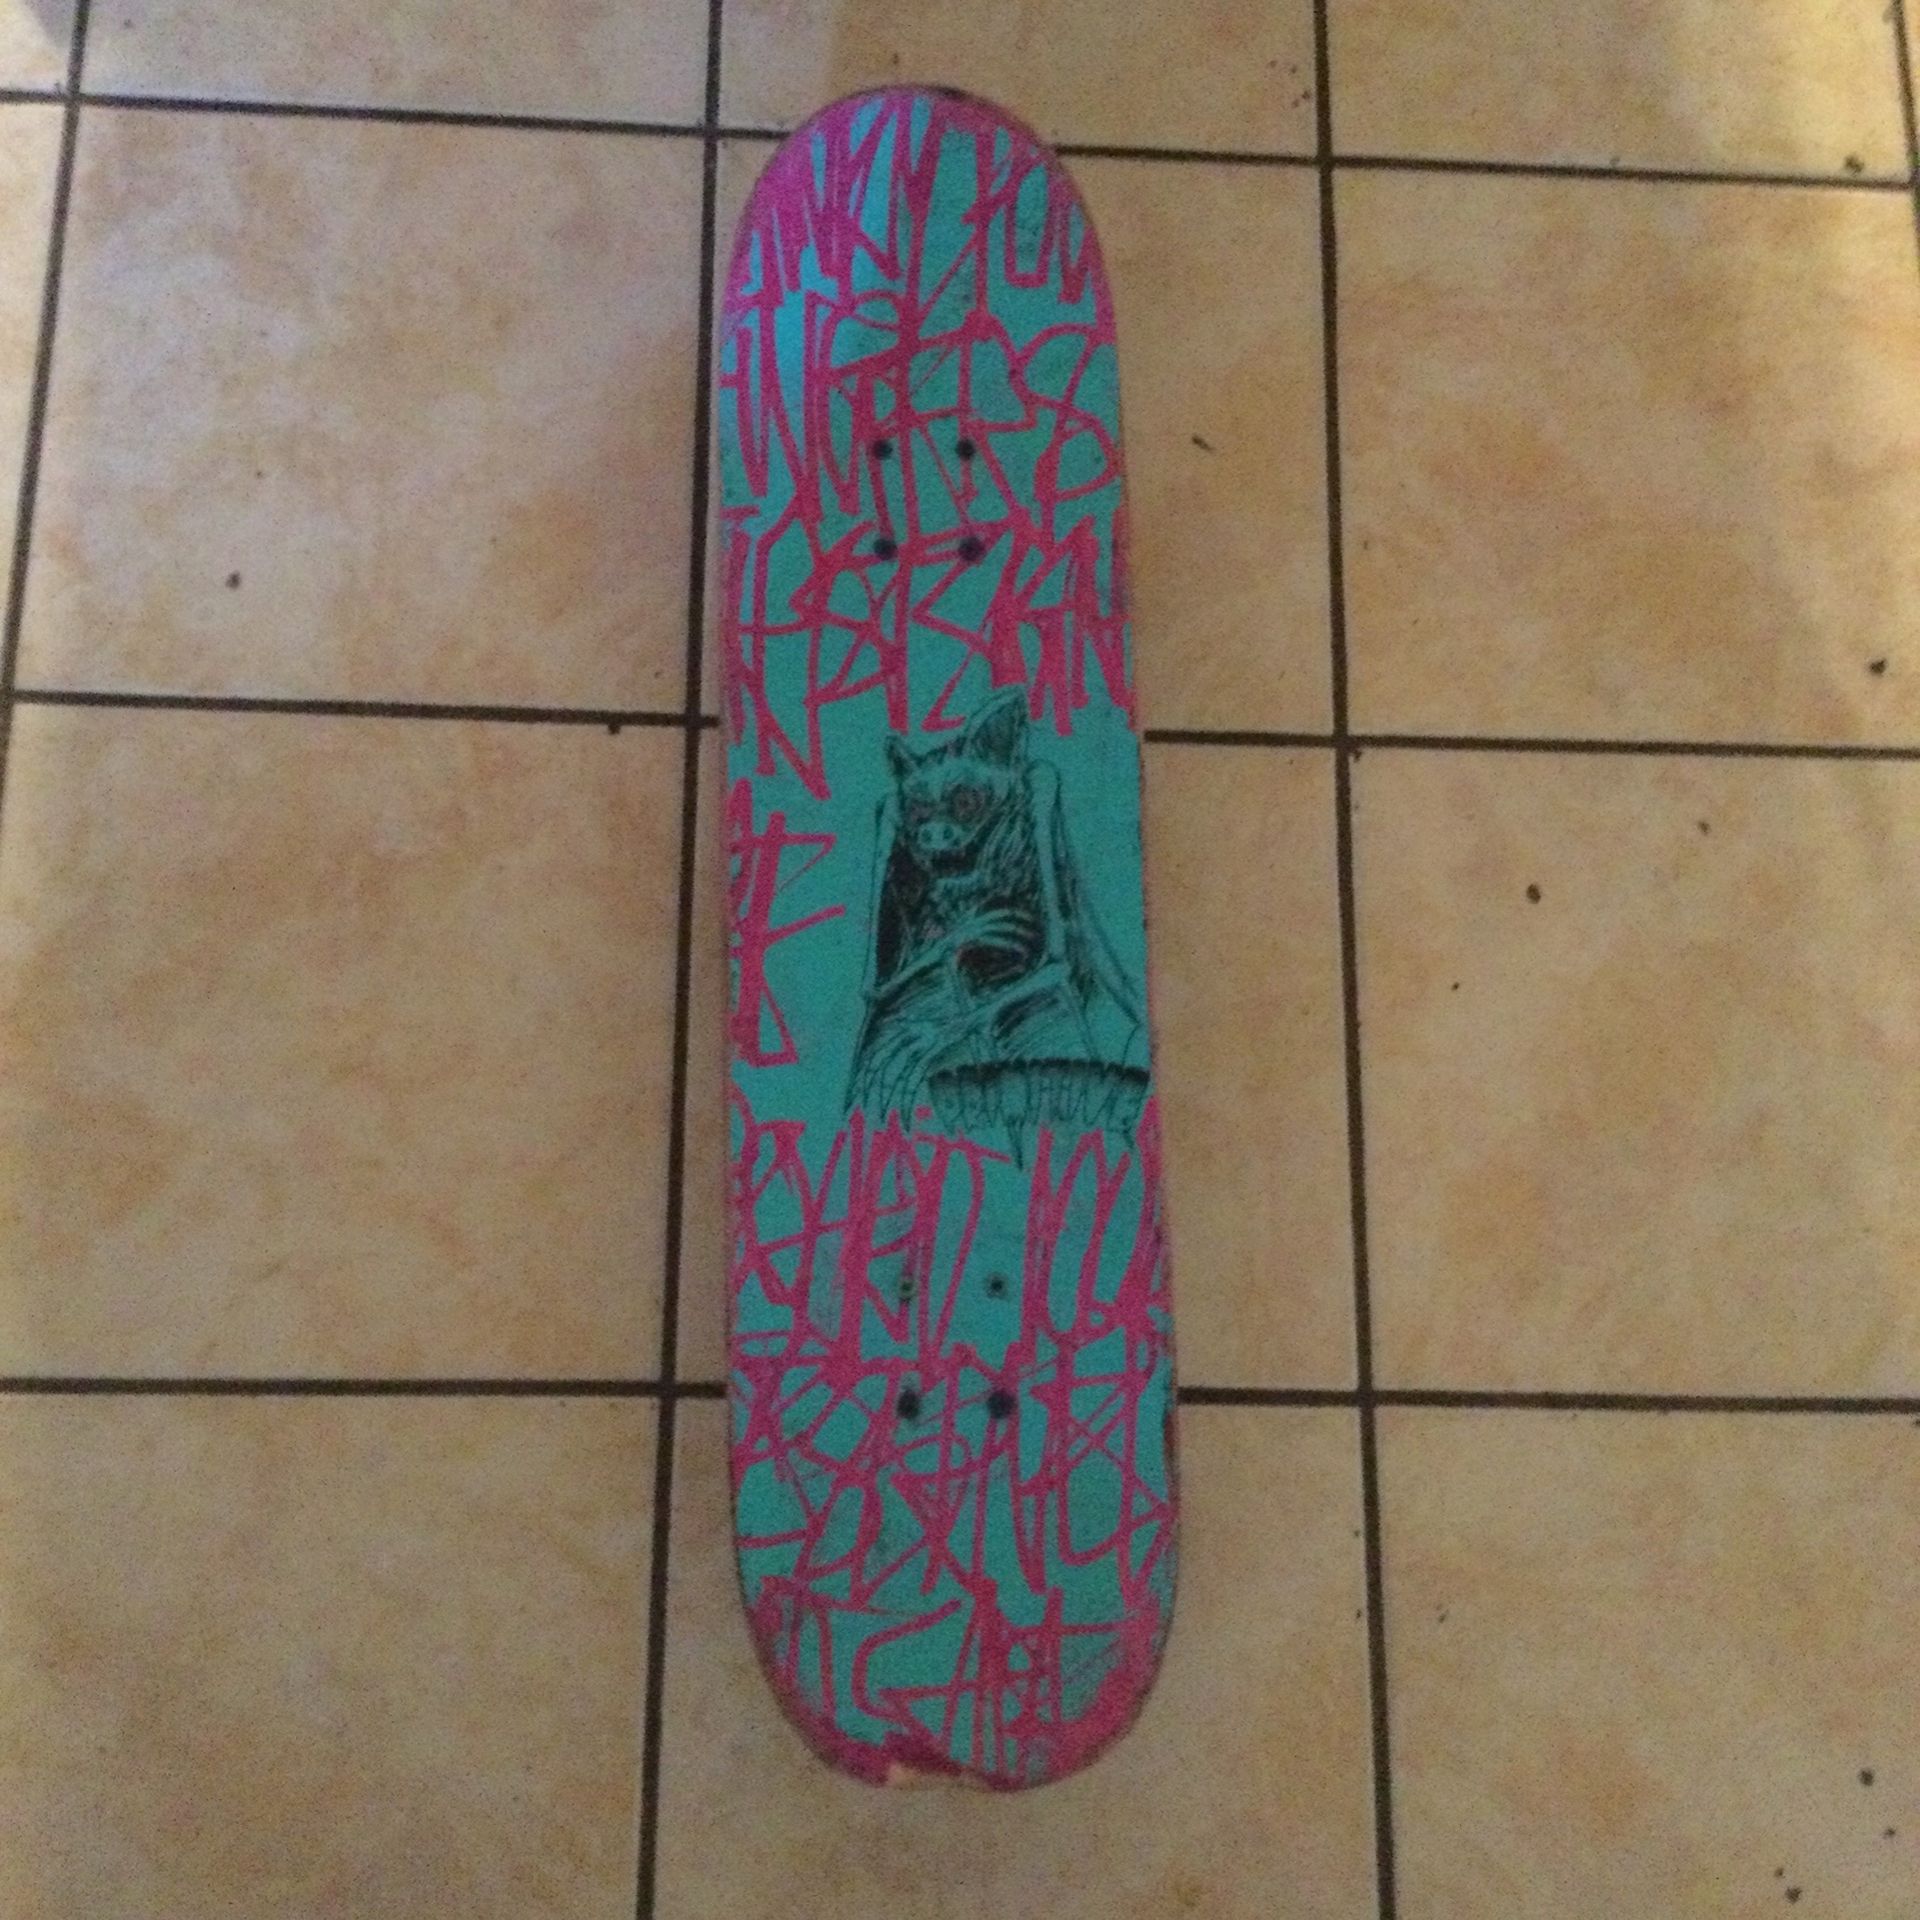 Franky villani Skateboard